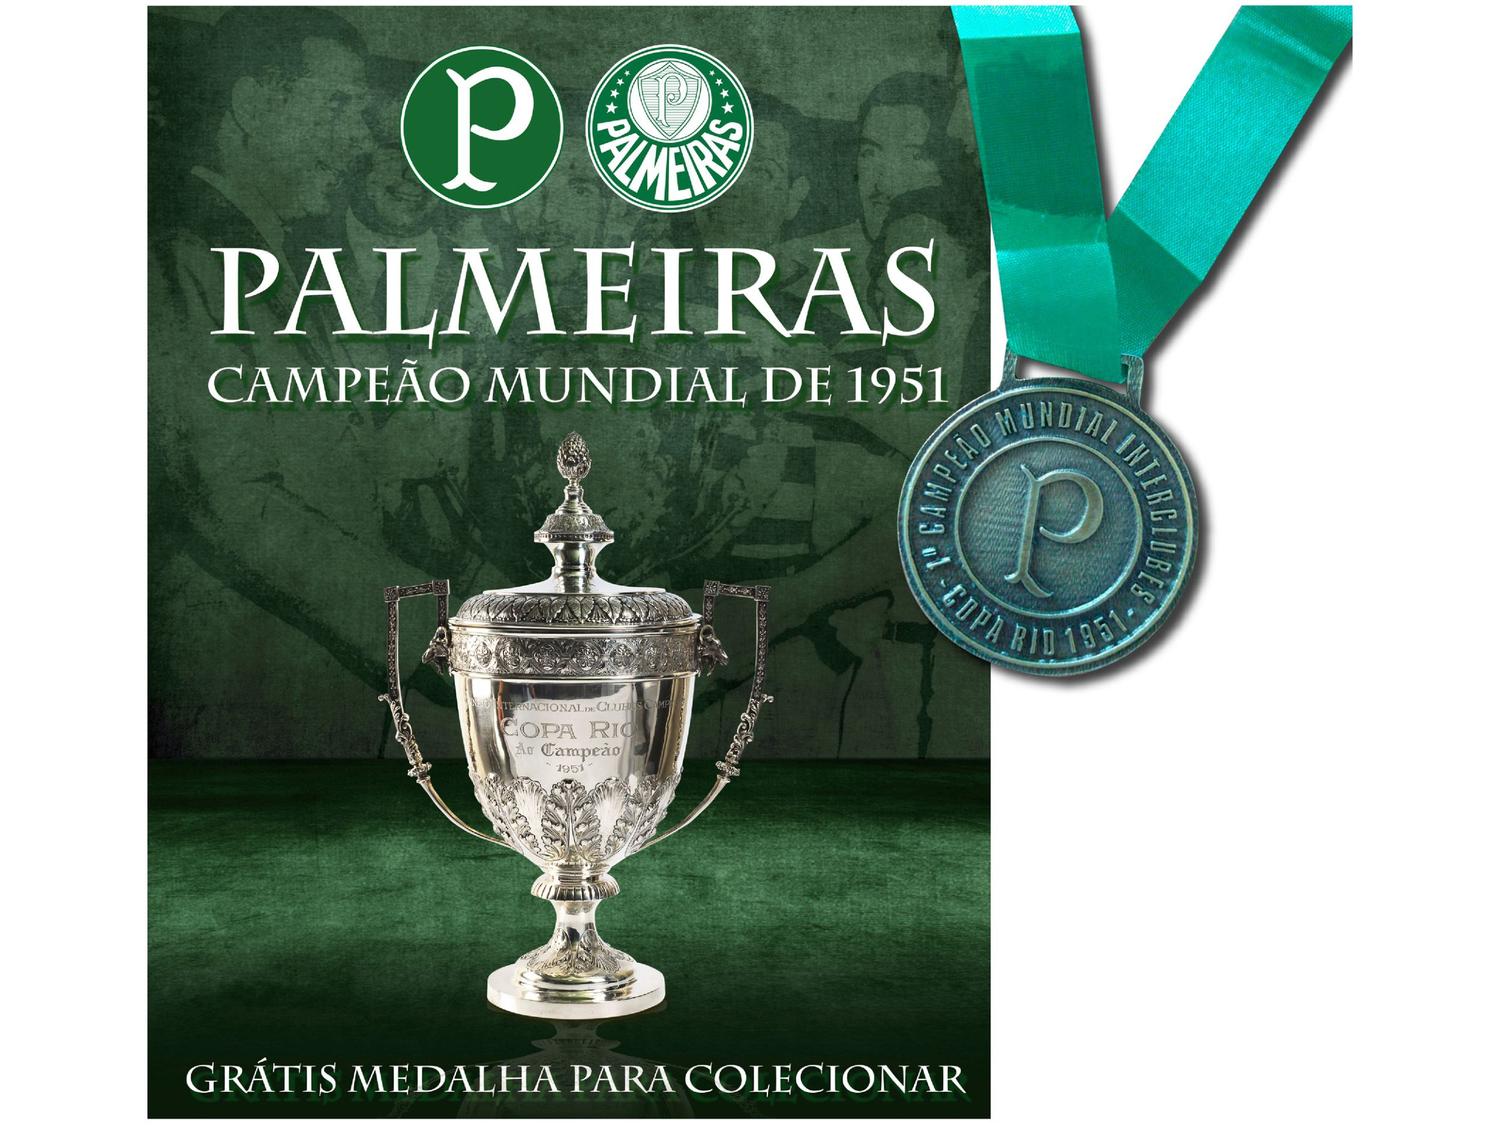 Livro Palmeiras campeão Mundial 1951, Magalu Empresas